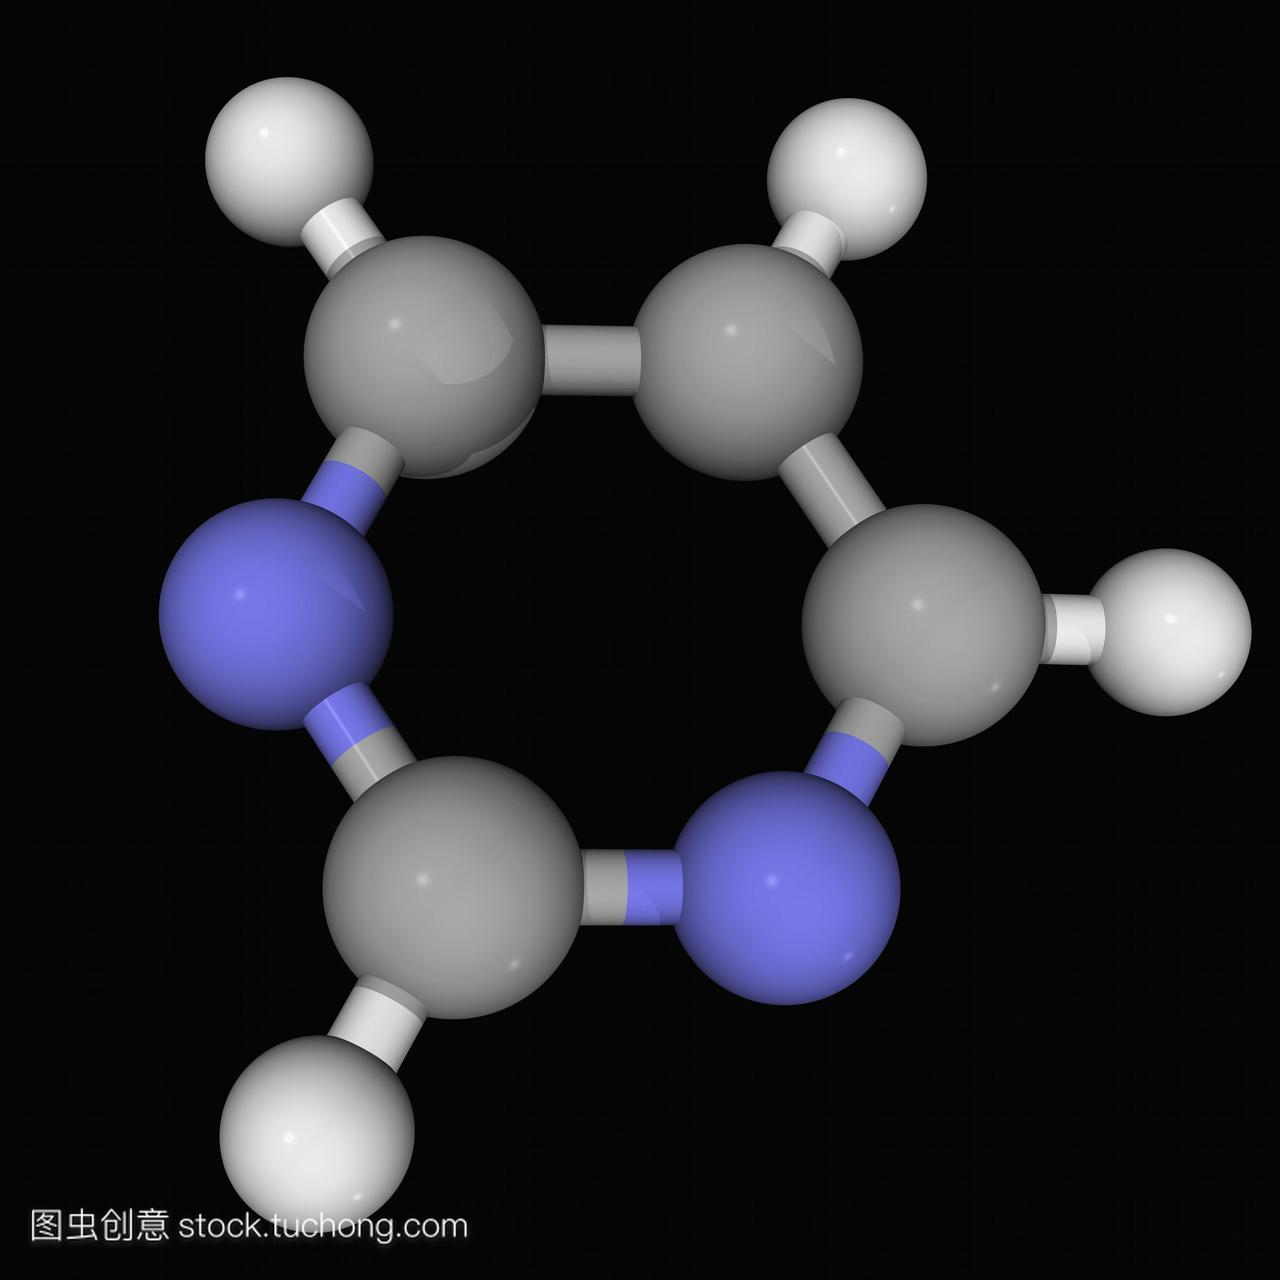 嘧啶,分子模型。芳香族有机化合物。三种核素